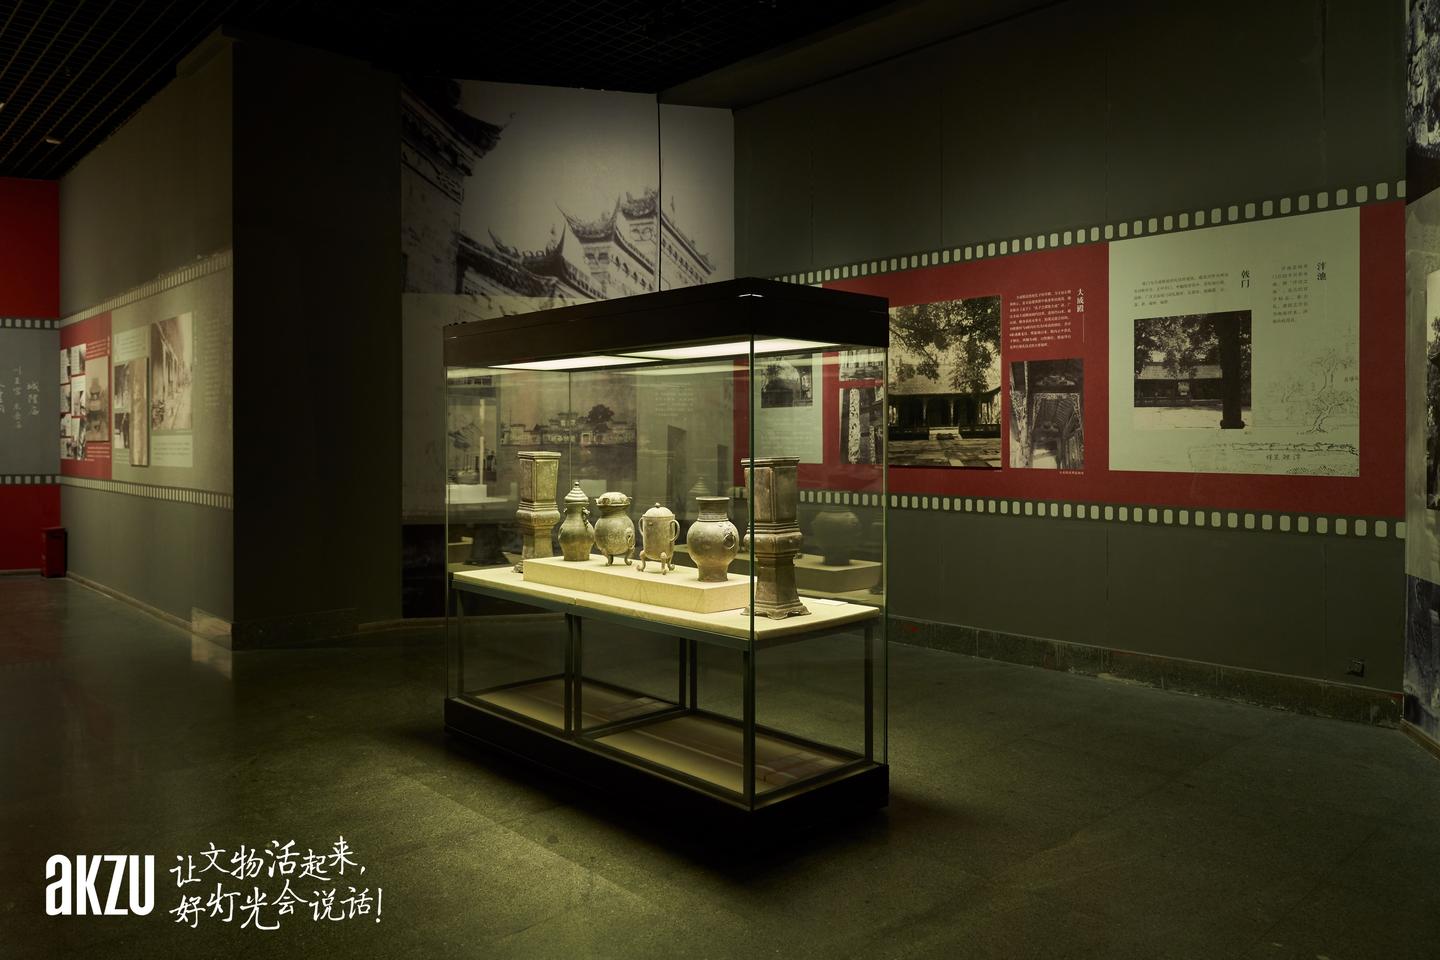 之三星堆博物馆光影广汉埃克苏带您看营造学社镜头下的历史文化烙印